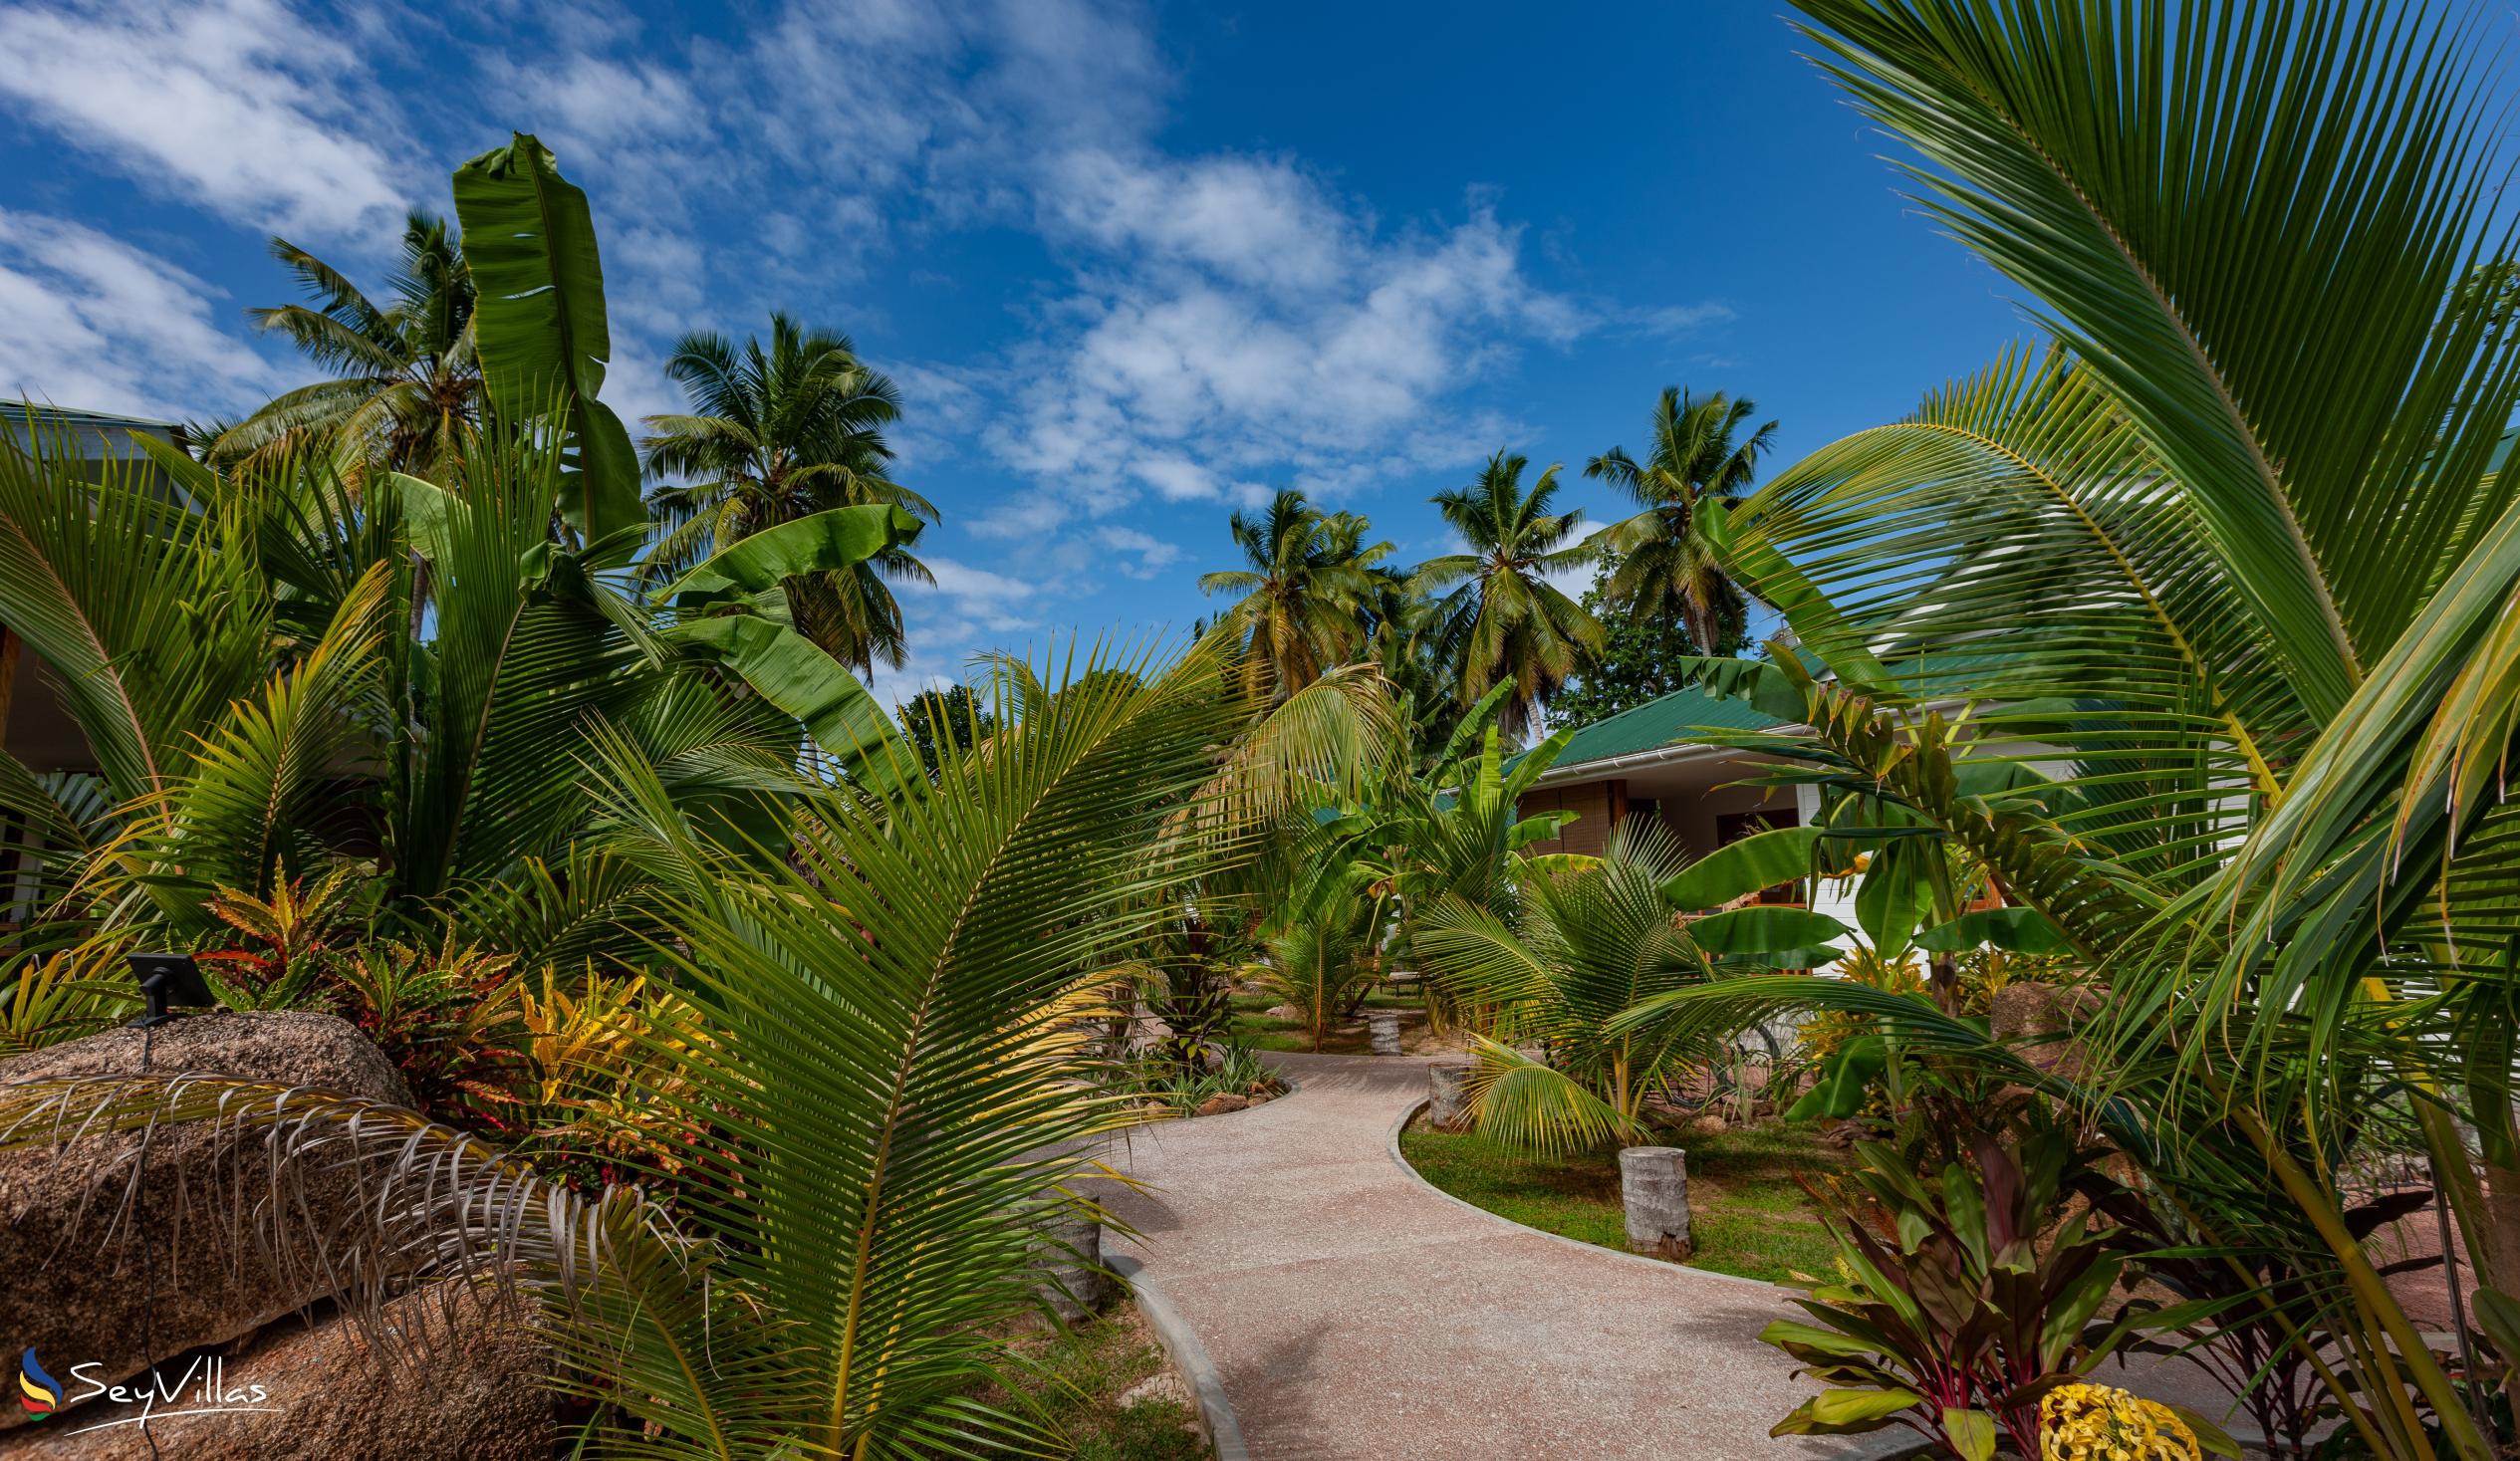 Photo 14: Coco de Mahi - Outdoor area - La Digue (Seychelles)